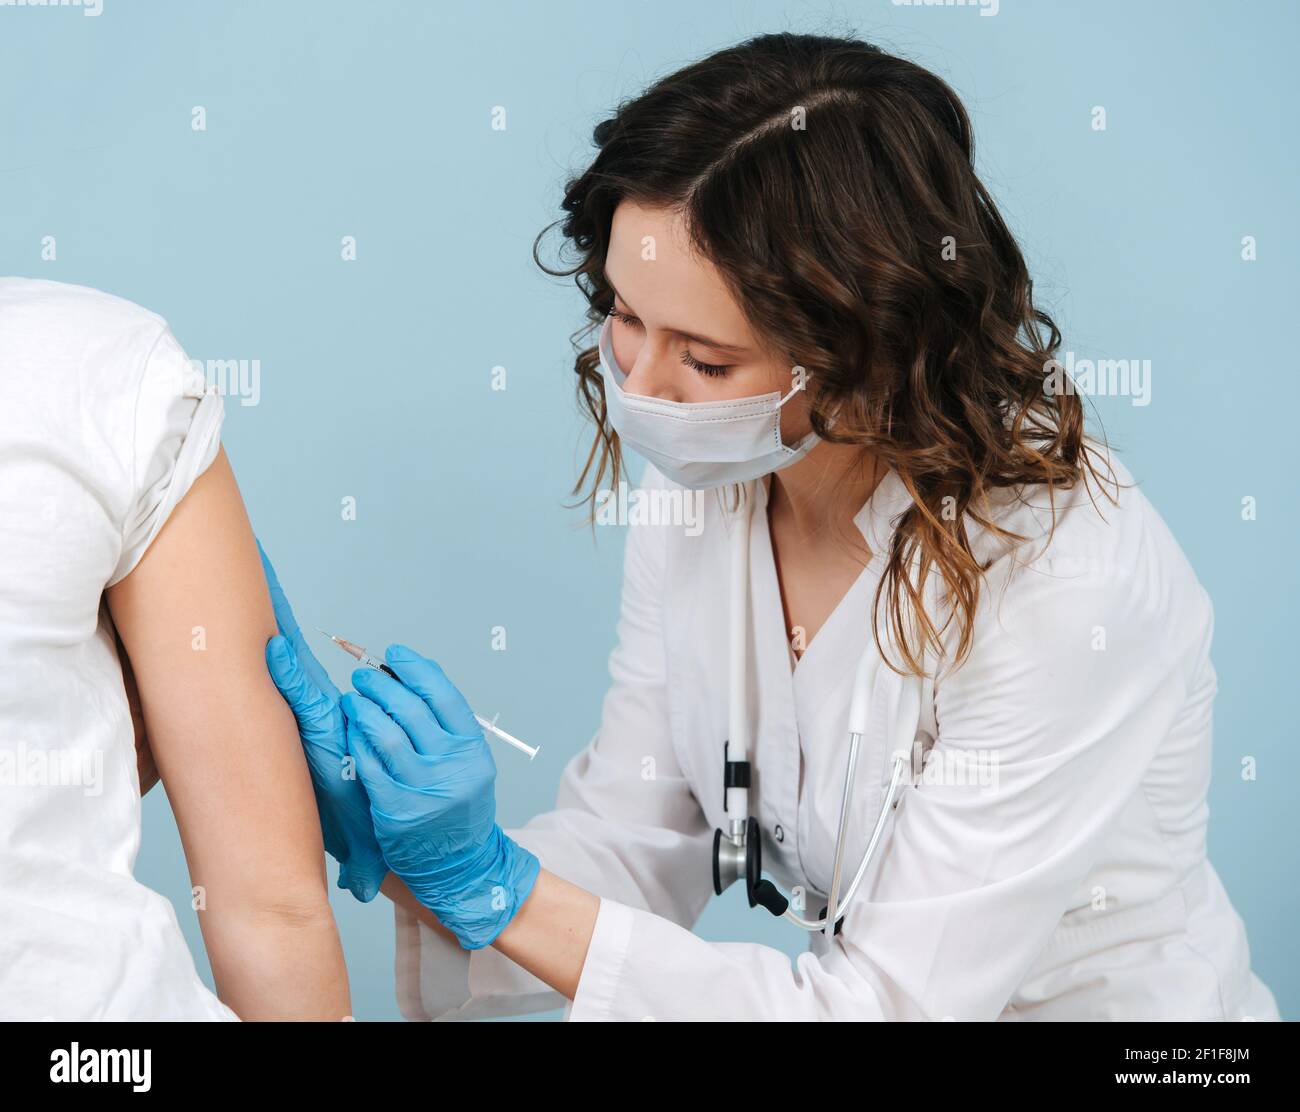 Infirmière soignante qui donne l'injection du vaccin de l'épaule. Sur fond bleu. Elle porte une robe blanche et un masque médical. Banque D'Images